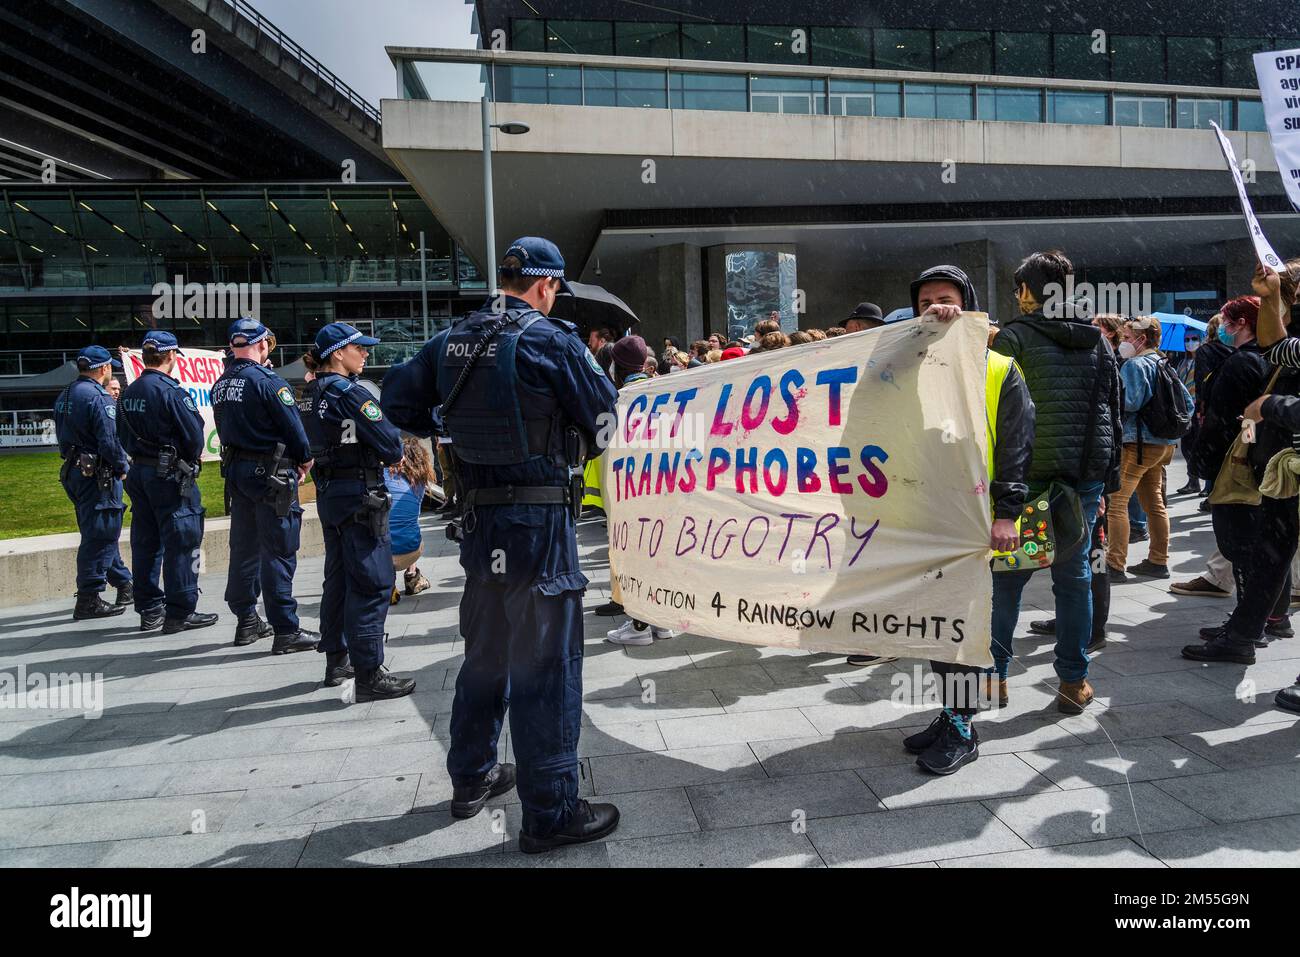 Hol dir das verlorene Transphobes-Banner beim Protest gegen die rechtsextreme CPAC-Konferenz im International Conference Centre, Darling Harbour, Sydney, NSW Stockfoto